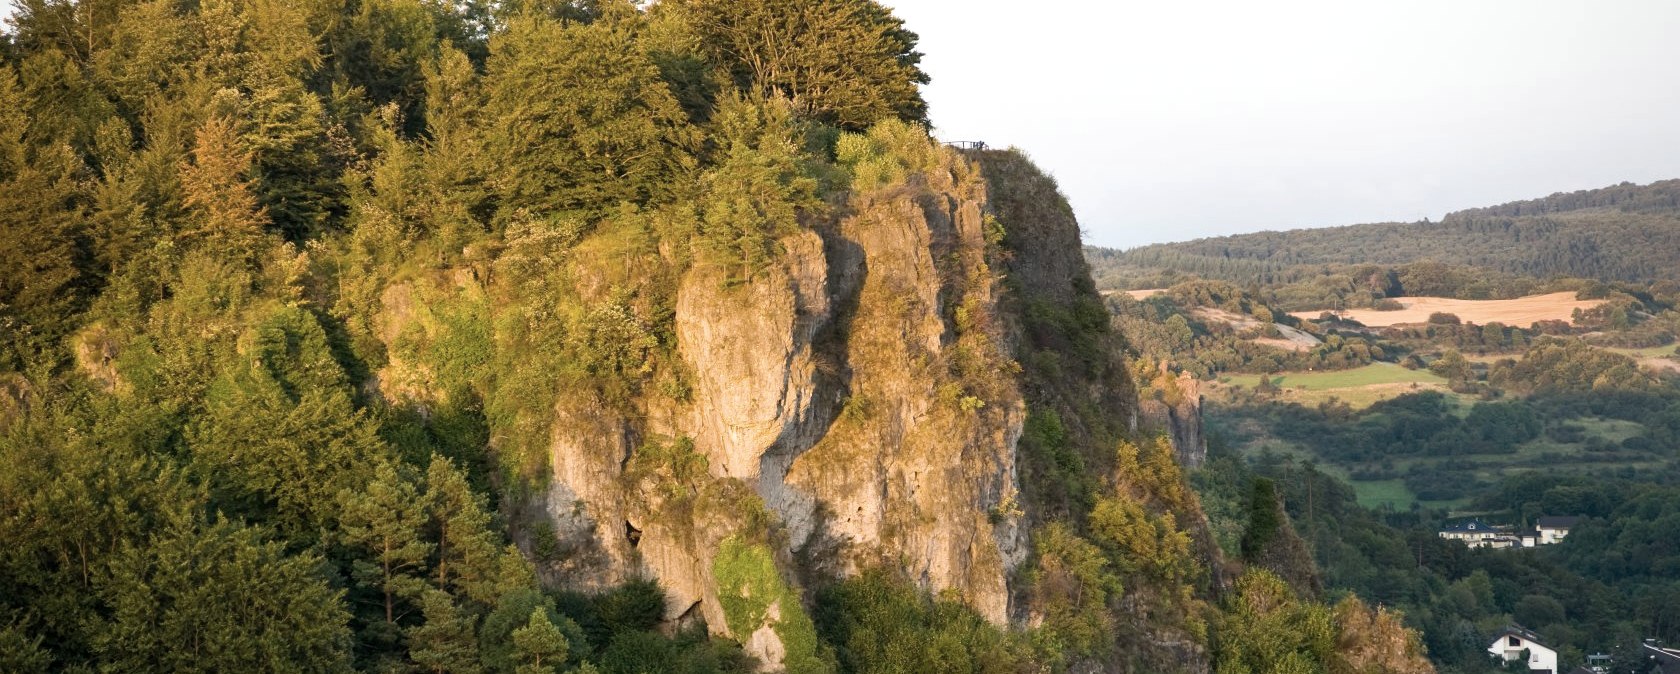 Blick auf die Gerolsteiner Dolomiten, © Eifel Tourismus GmbH/D. Ketz